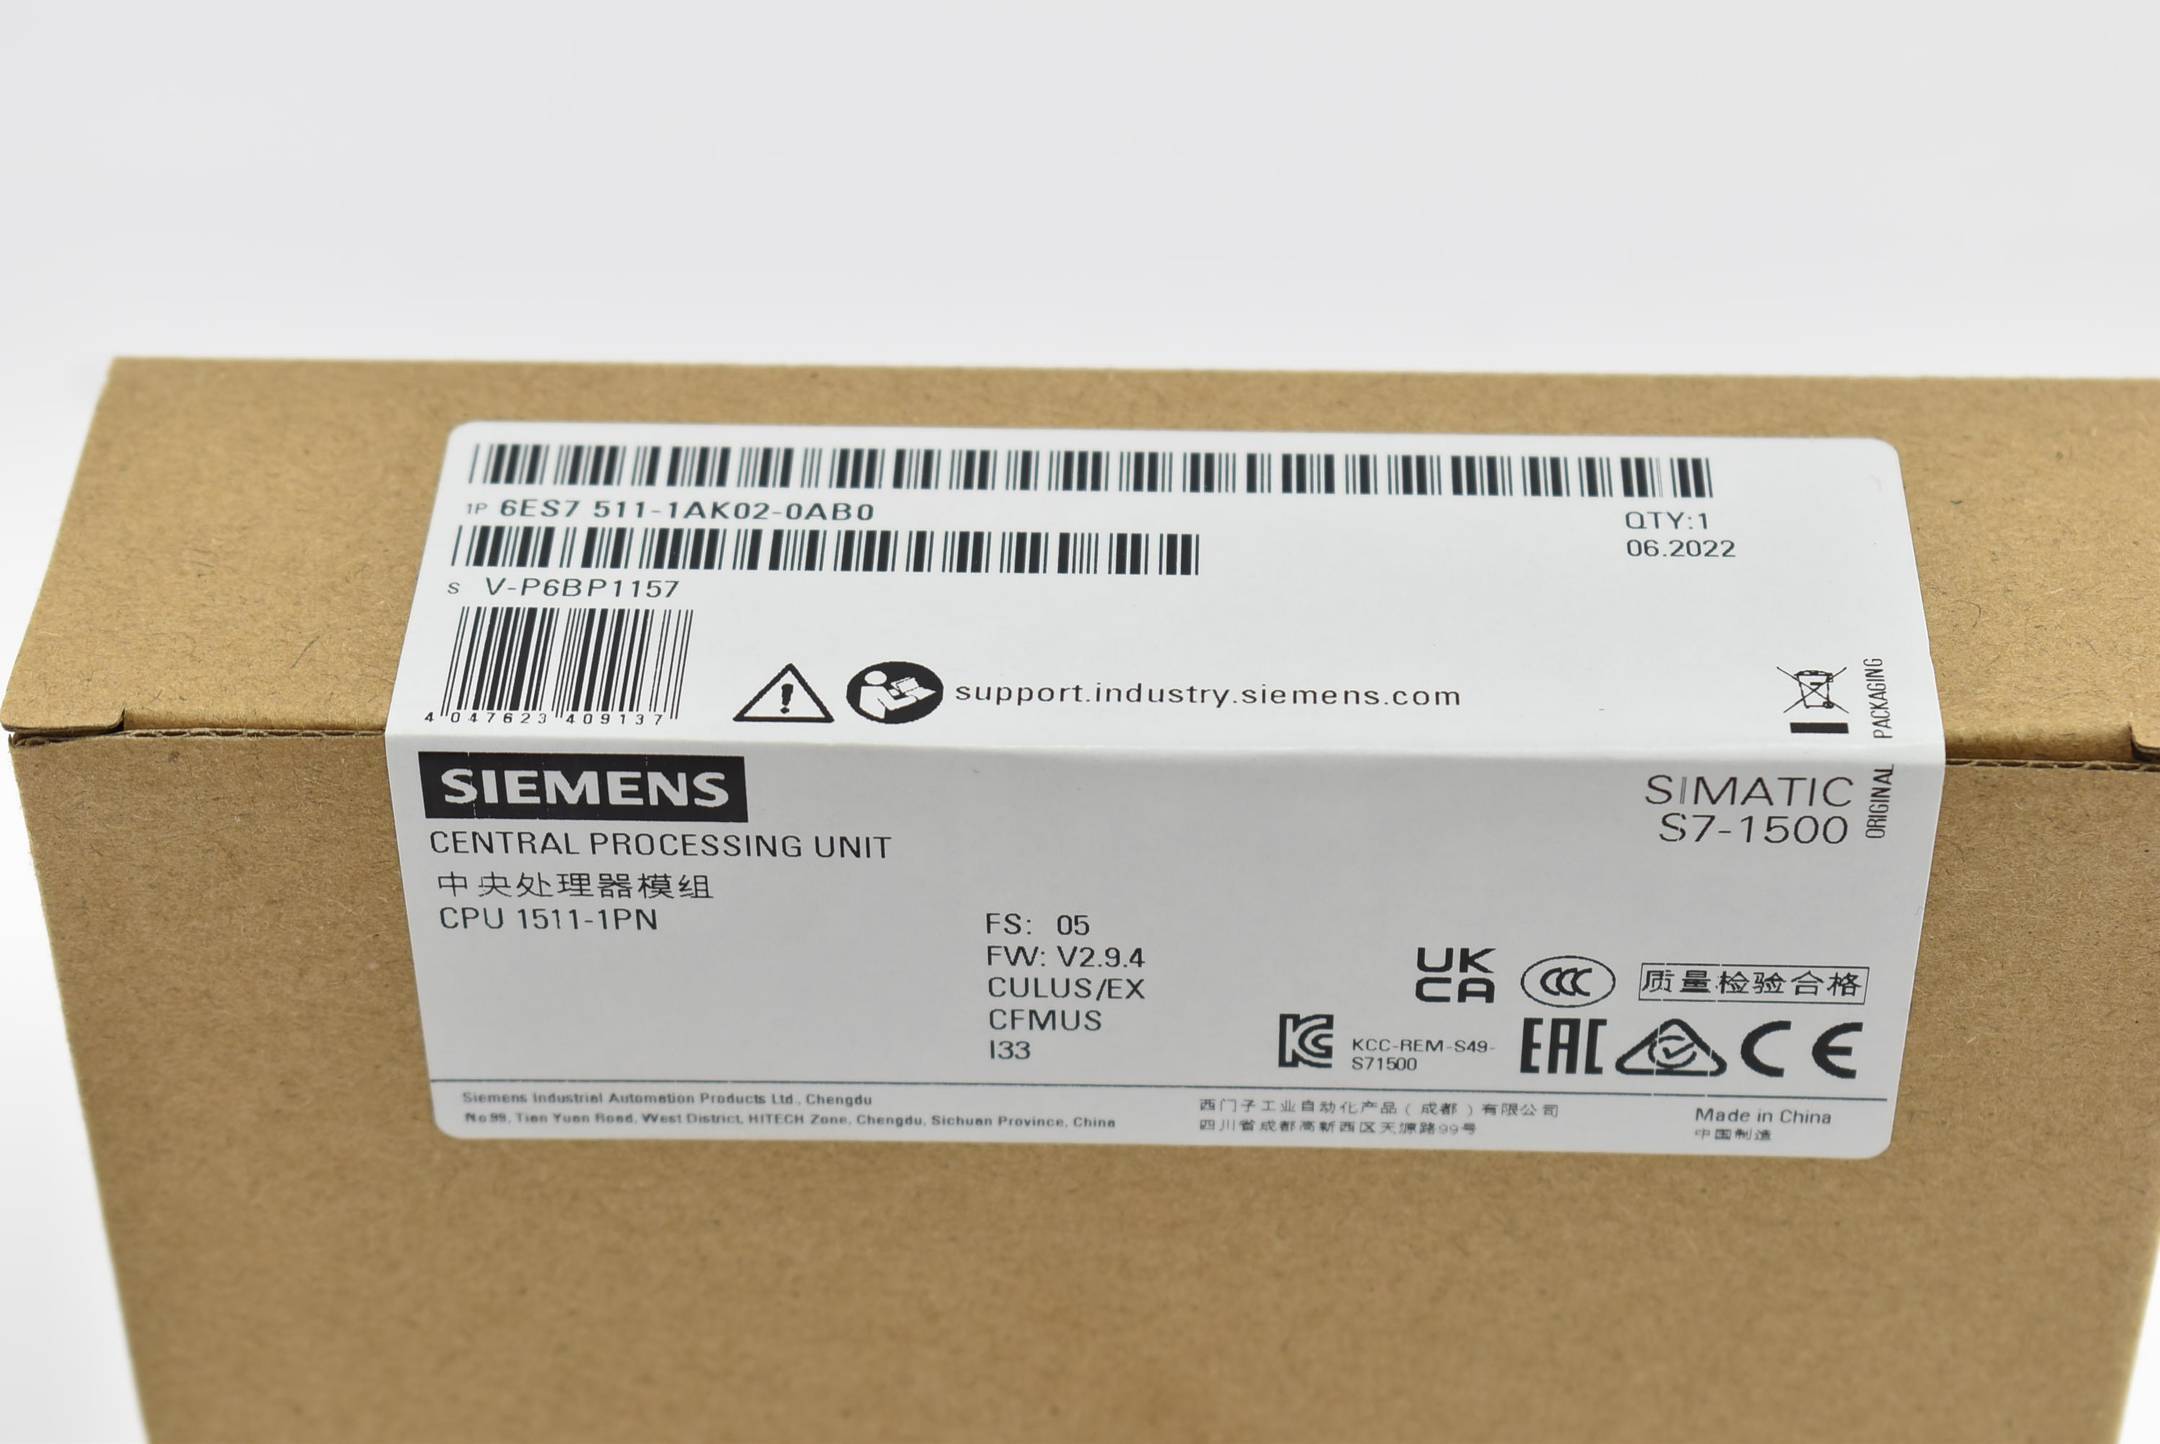 Siemens simatic S7-1500 6ES7511-1AK02-0AB0 ( 6ES7 511-1AK02-0AB0 ) E5